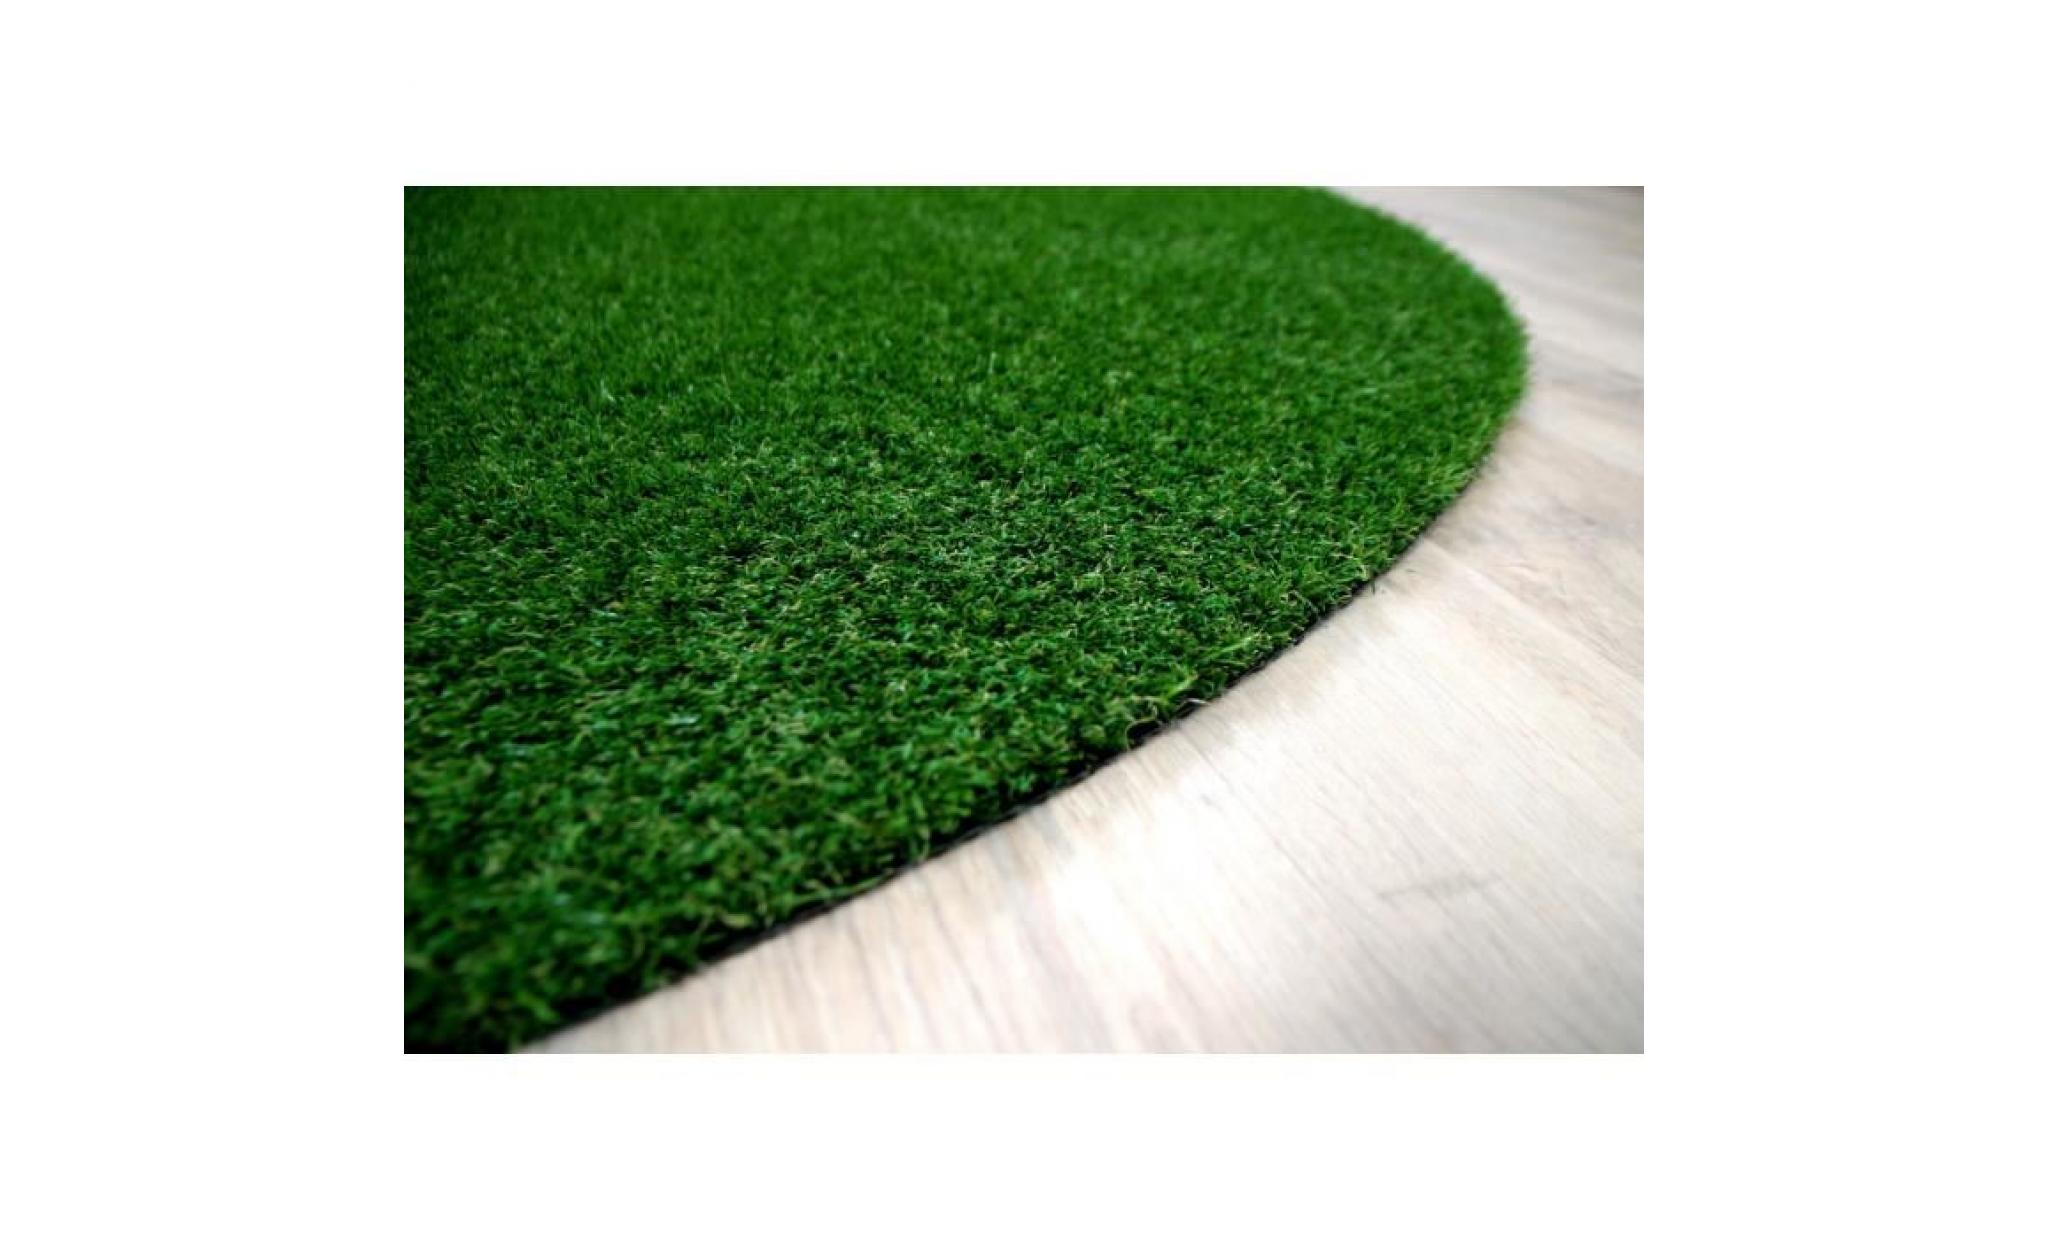 chelsea   tapis type luxe gazon artificiel rond – pour jardin, terrasse, balcon   vert   [133 cm rond] pas cher